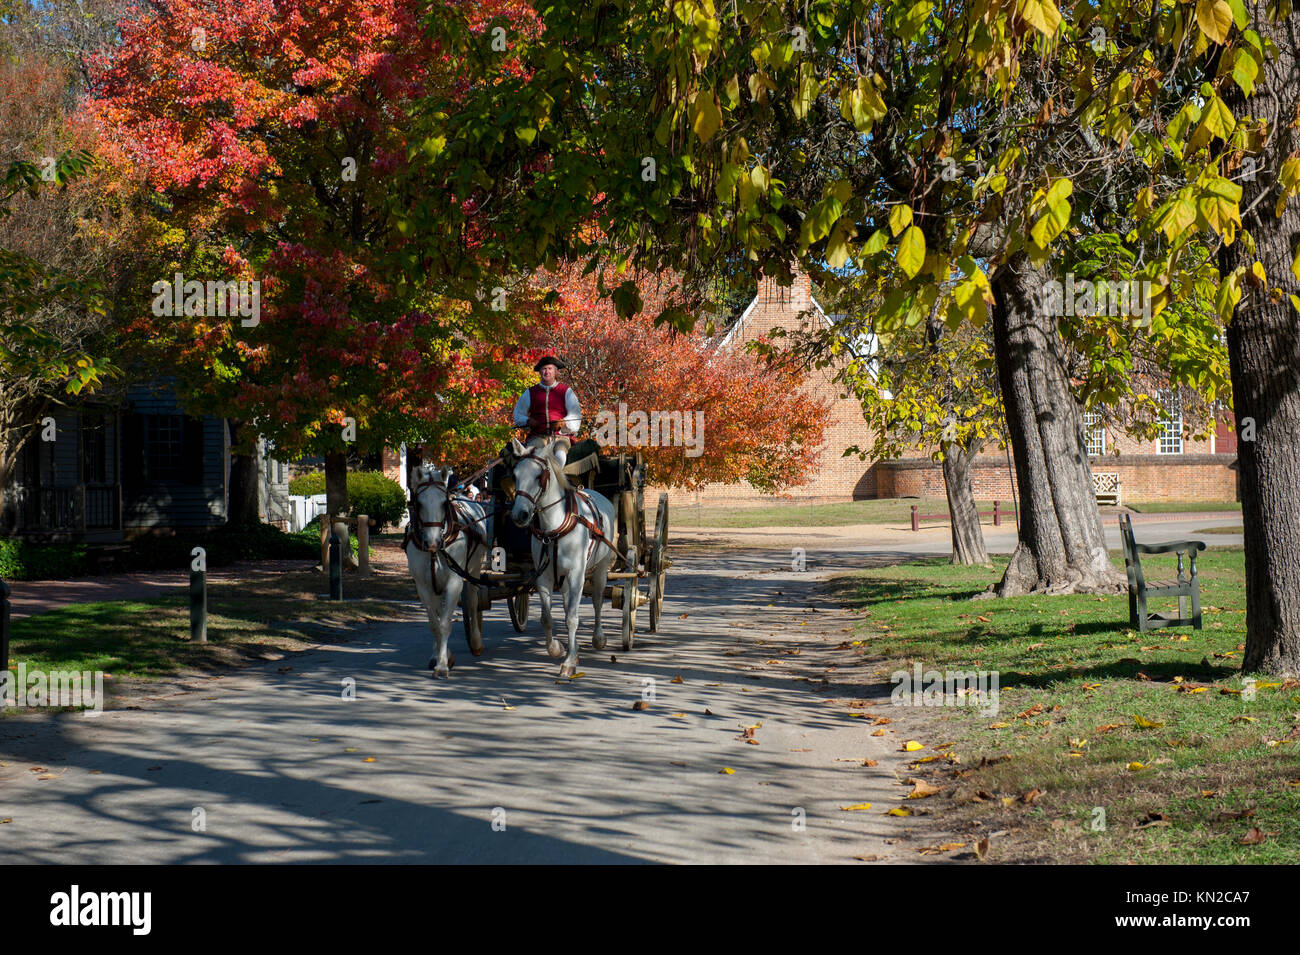 USA Virginia VA Williamsburg Colonial collection automne automne un homme conduisant une calèche sous les arbres des feuilles d'automne Banque D'Images